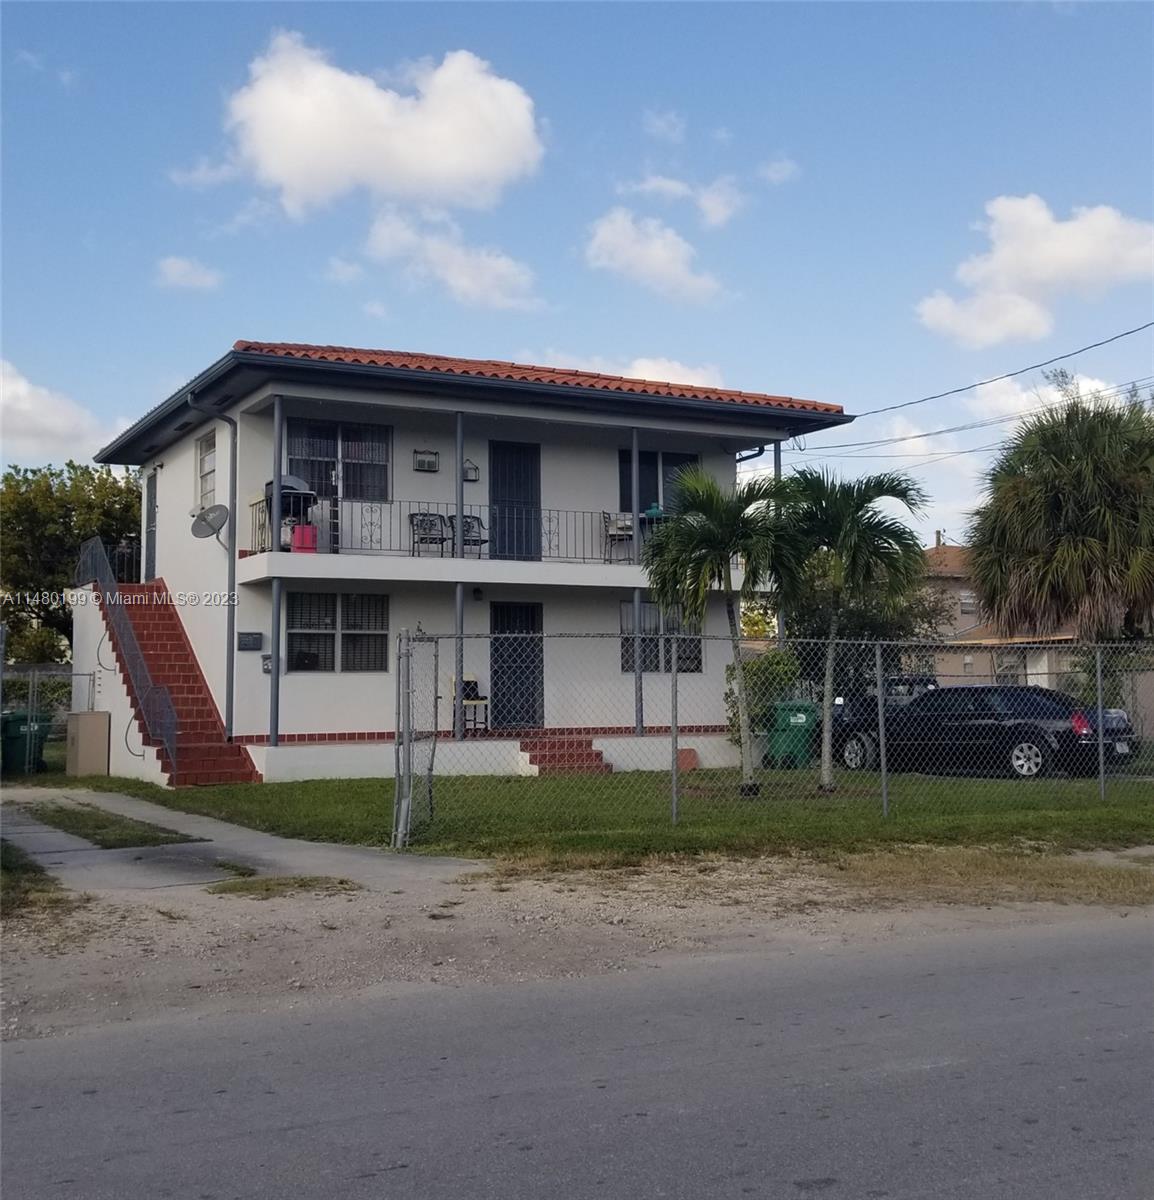 Rental Property at 2925 Nw 132nd Ter, Opa-Locka, Miami-Dade County, Florida -  - $680,000 MO.